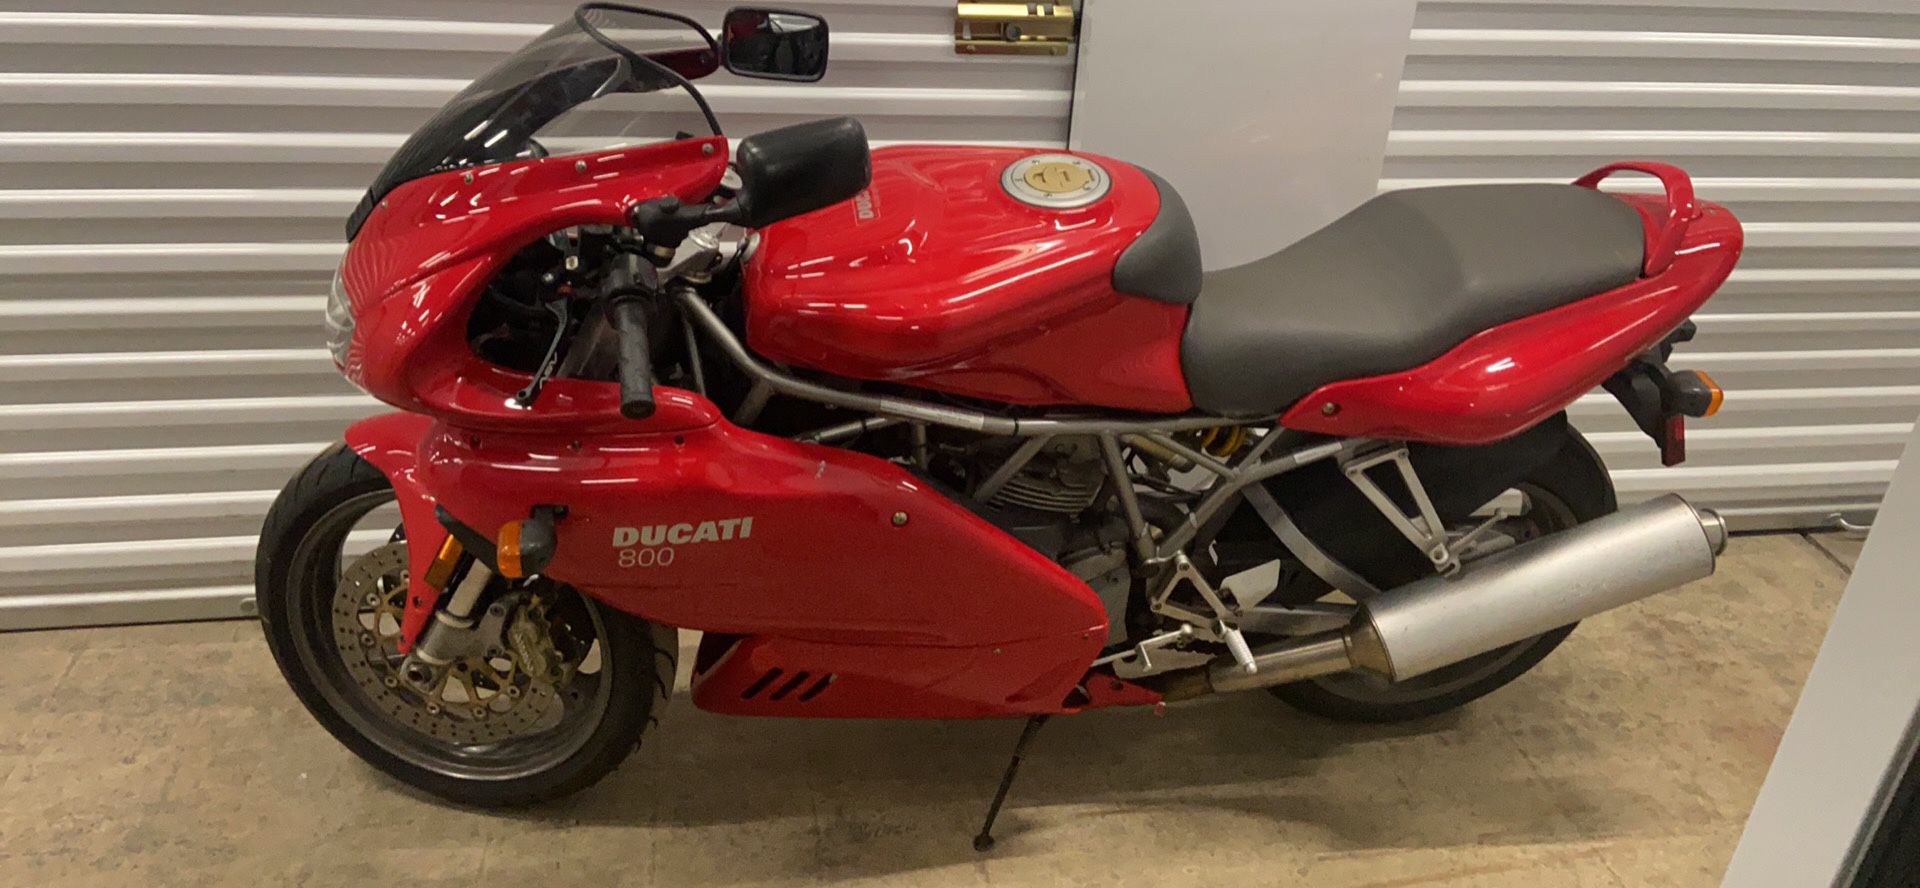 2004 Ducati super sport 800